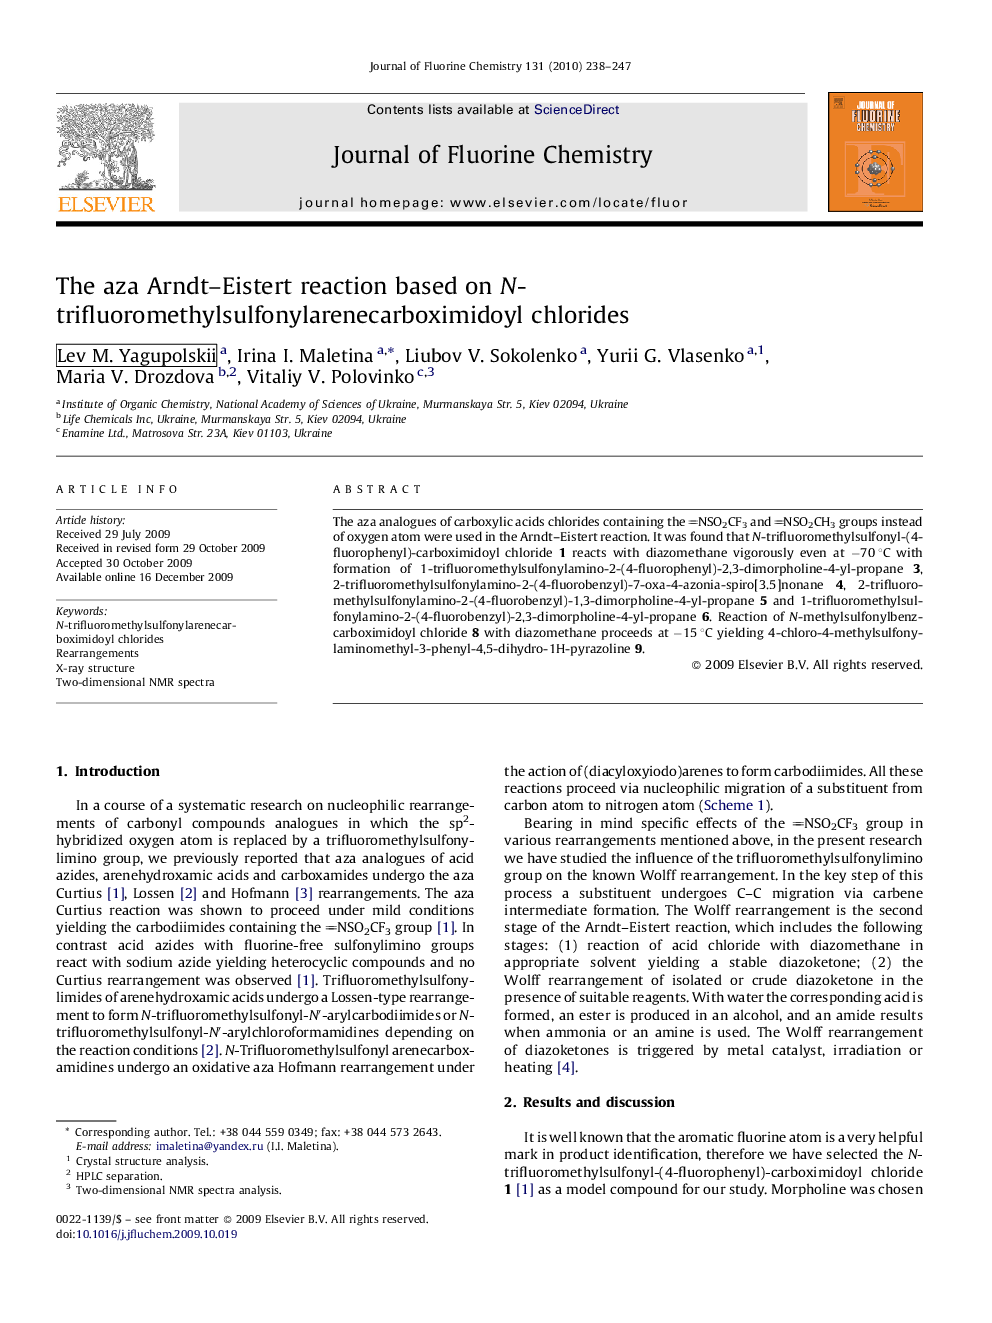 The aza Arndt–Eistert reaction based on N-trifluoromethylsulfonylarenecarboximidoyl chlorides